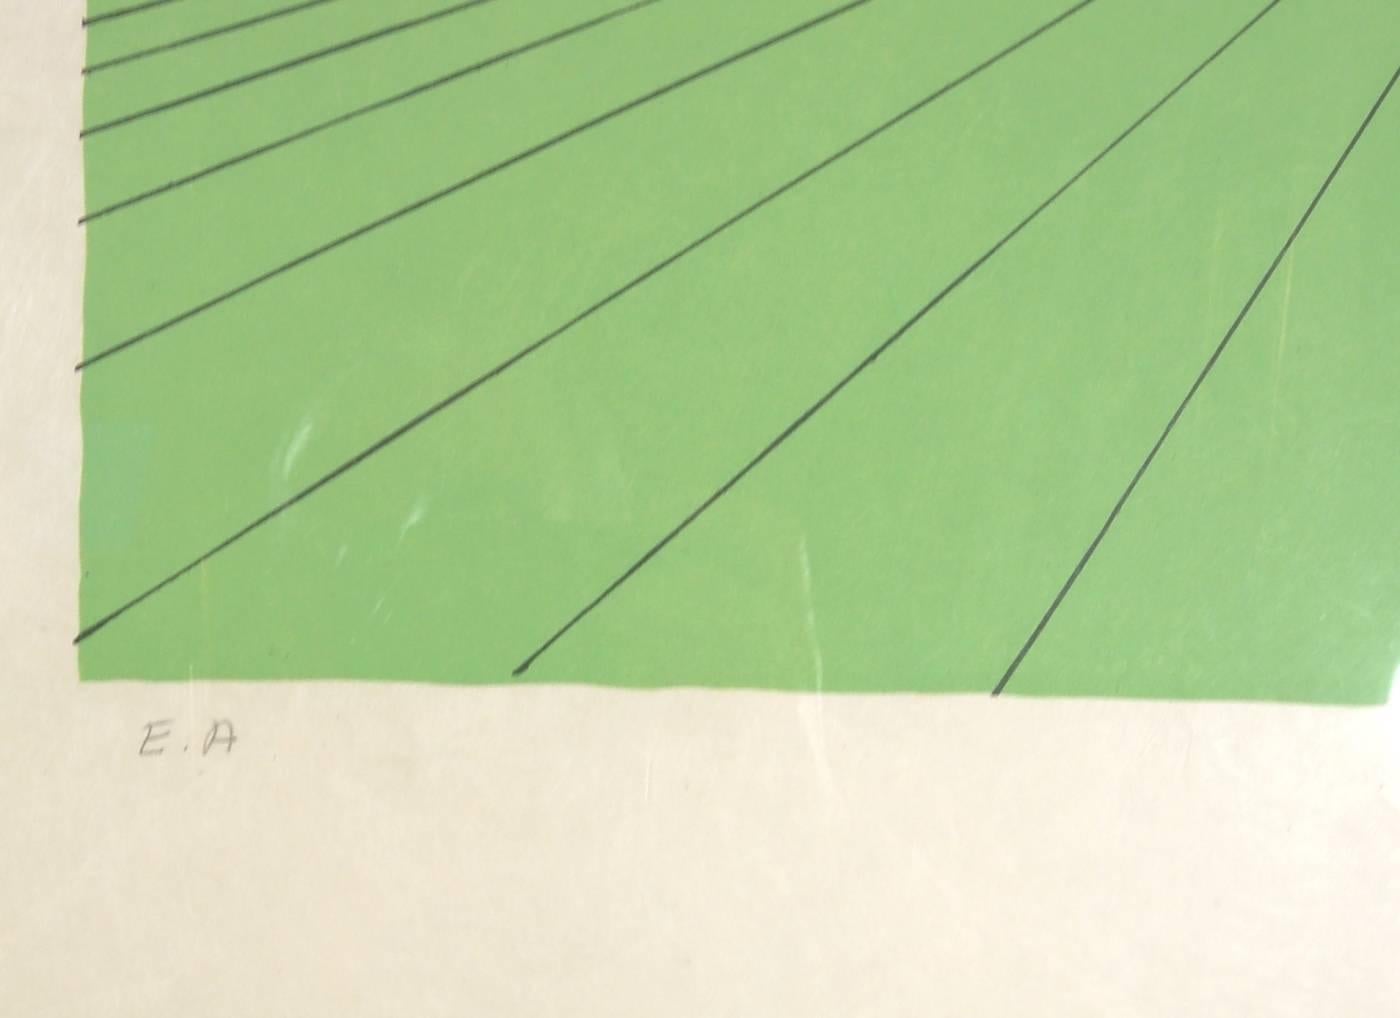 Künstler:   Salvador Dali (spanischer Surrealist, 1904-1989)
Titel:     Die Lieder der Drolatiker von Pantagruel
Jahr:    1973
Medium:	Lithographie
Auflage:	Mit Bleistift eingeschrieben E.A (Epreuve d' Artiste)
Papier:	Japan
Größe	Bild:   26,5 x 19